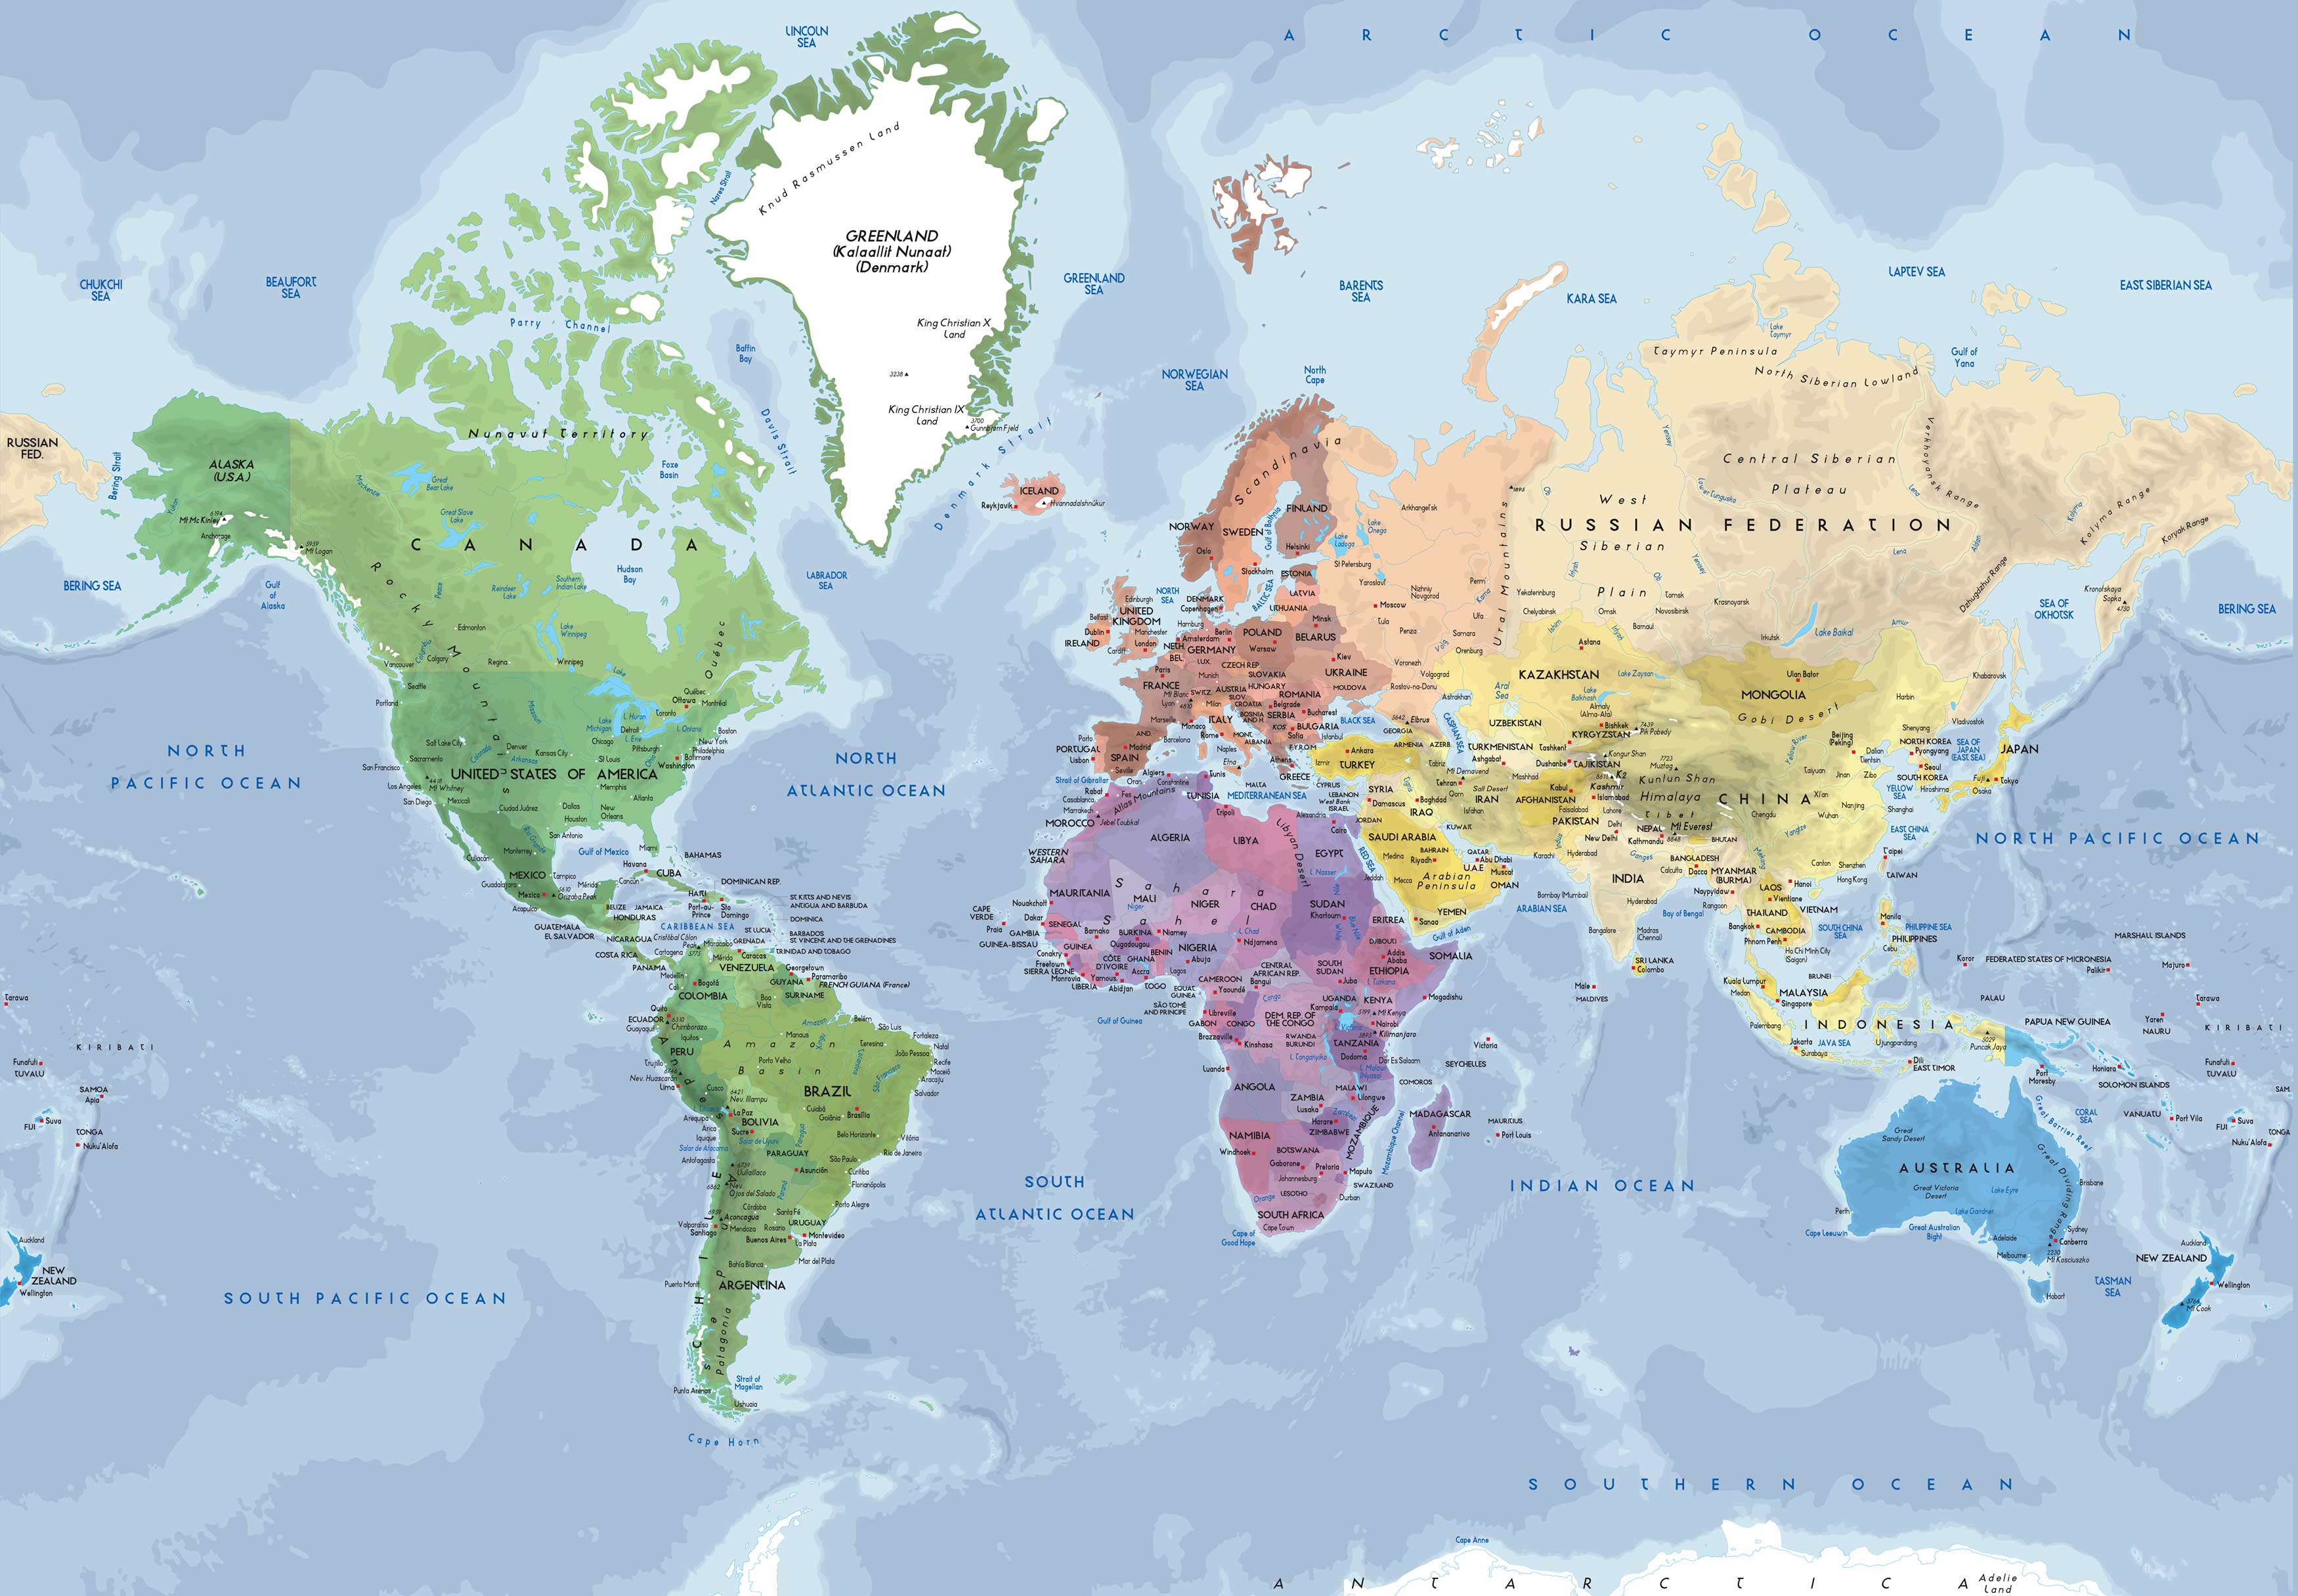 Blue World Map Wallpaper